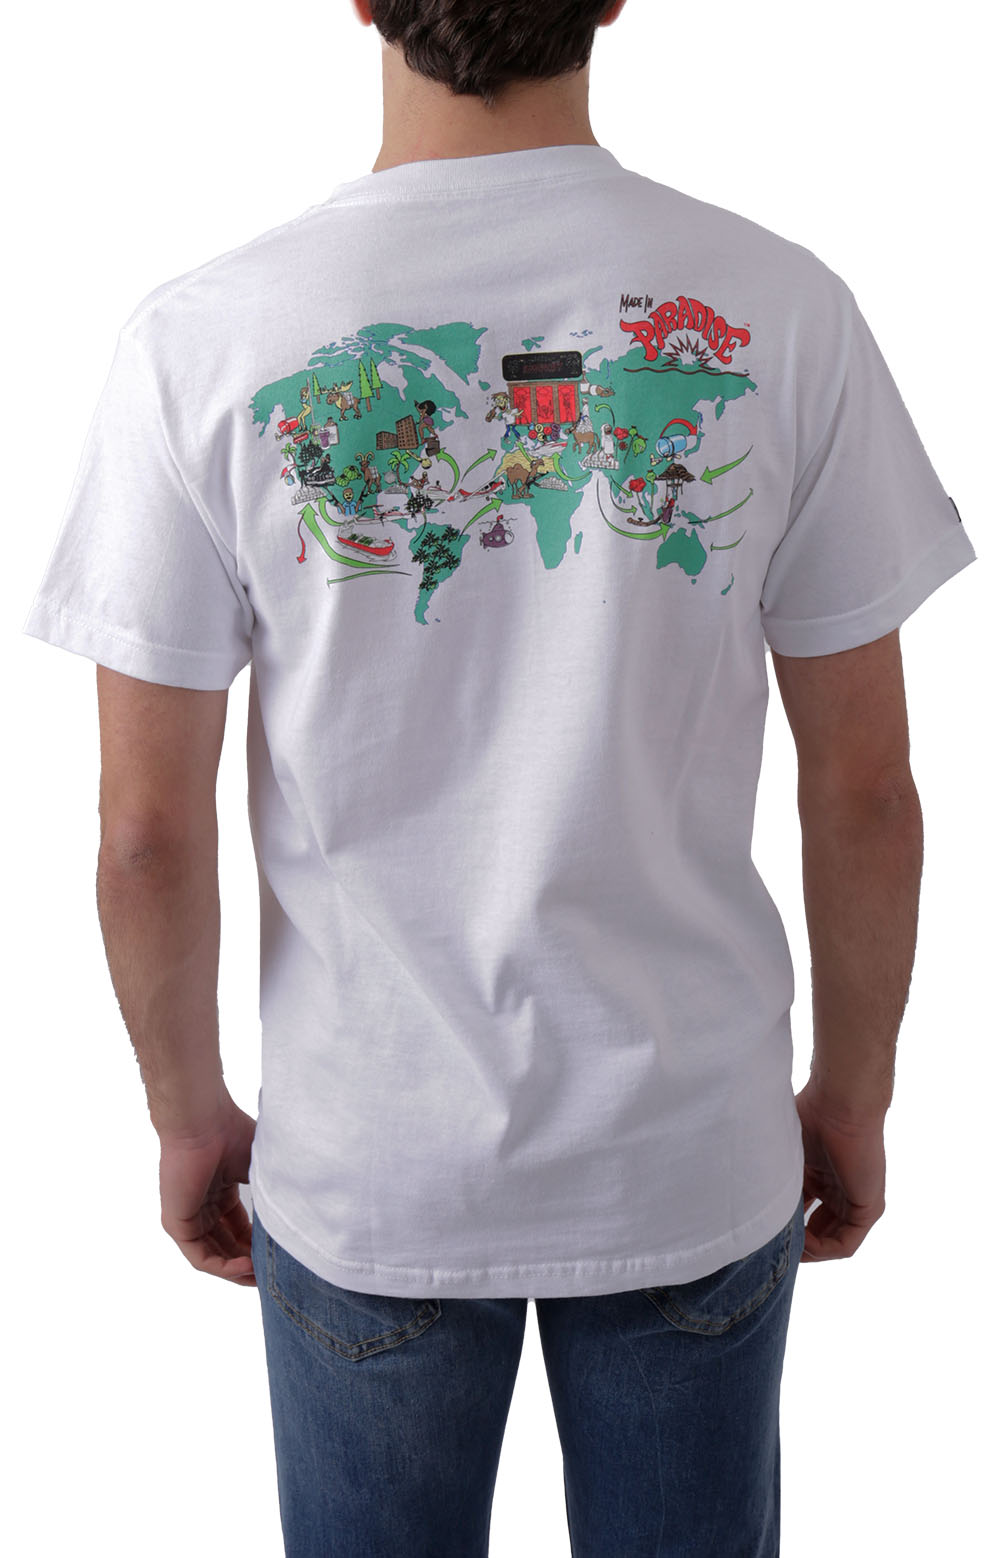 World Drug Trade T-Shirt - White